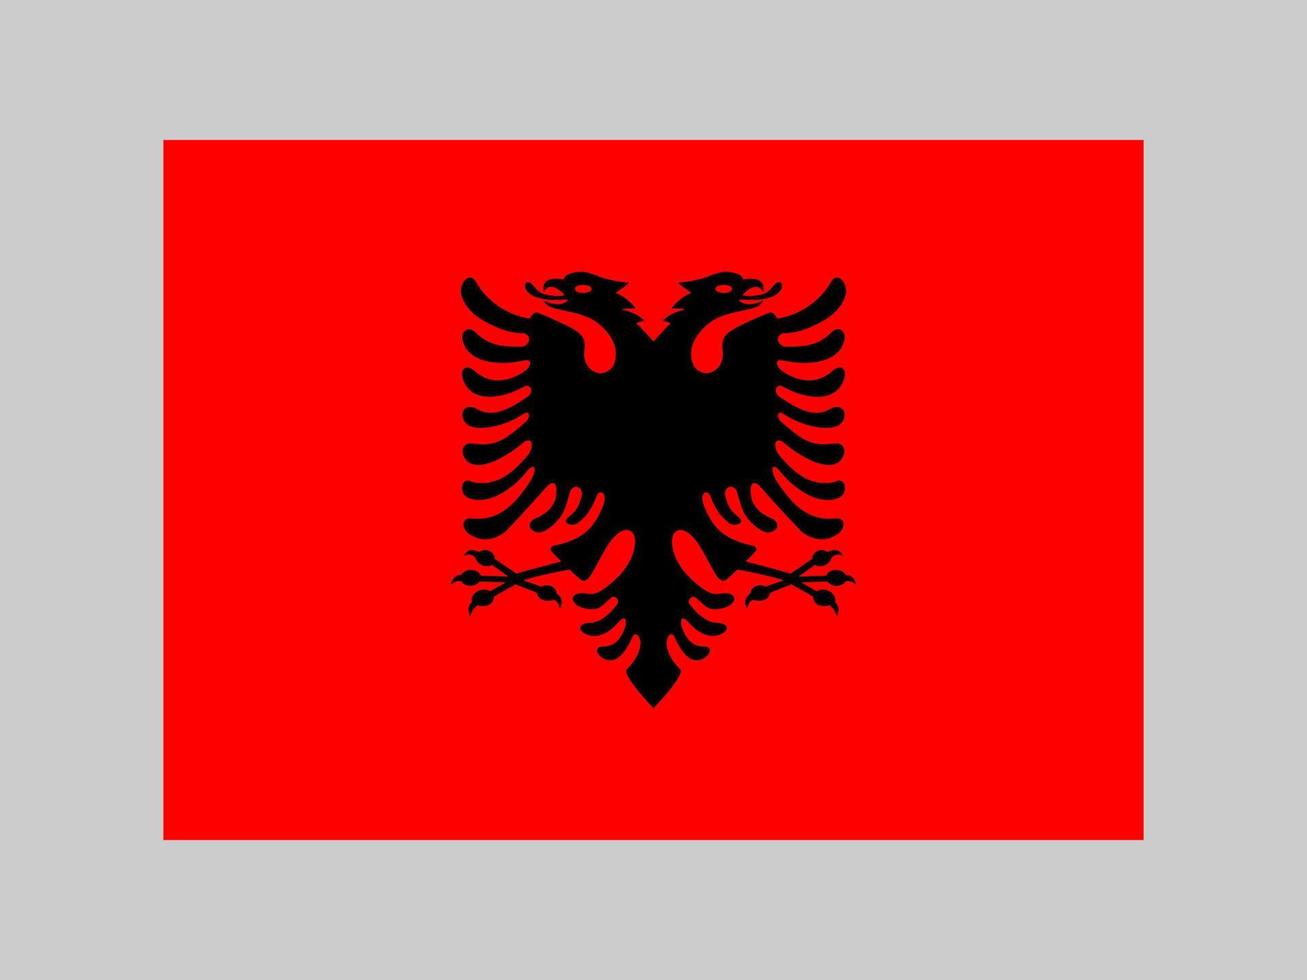 Albaniens flagga, officiella färger och proportioner. vektor illustration.